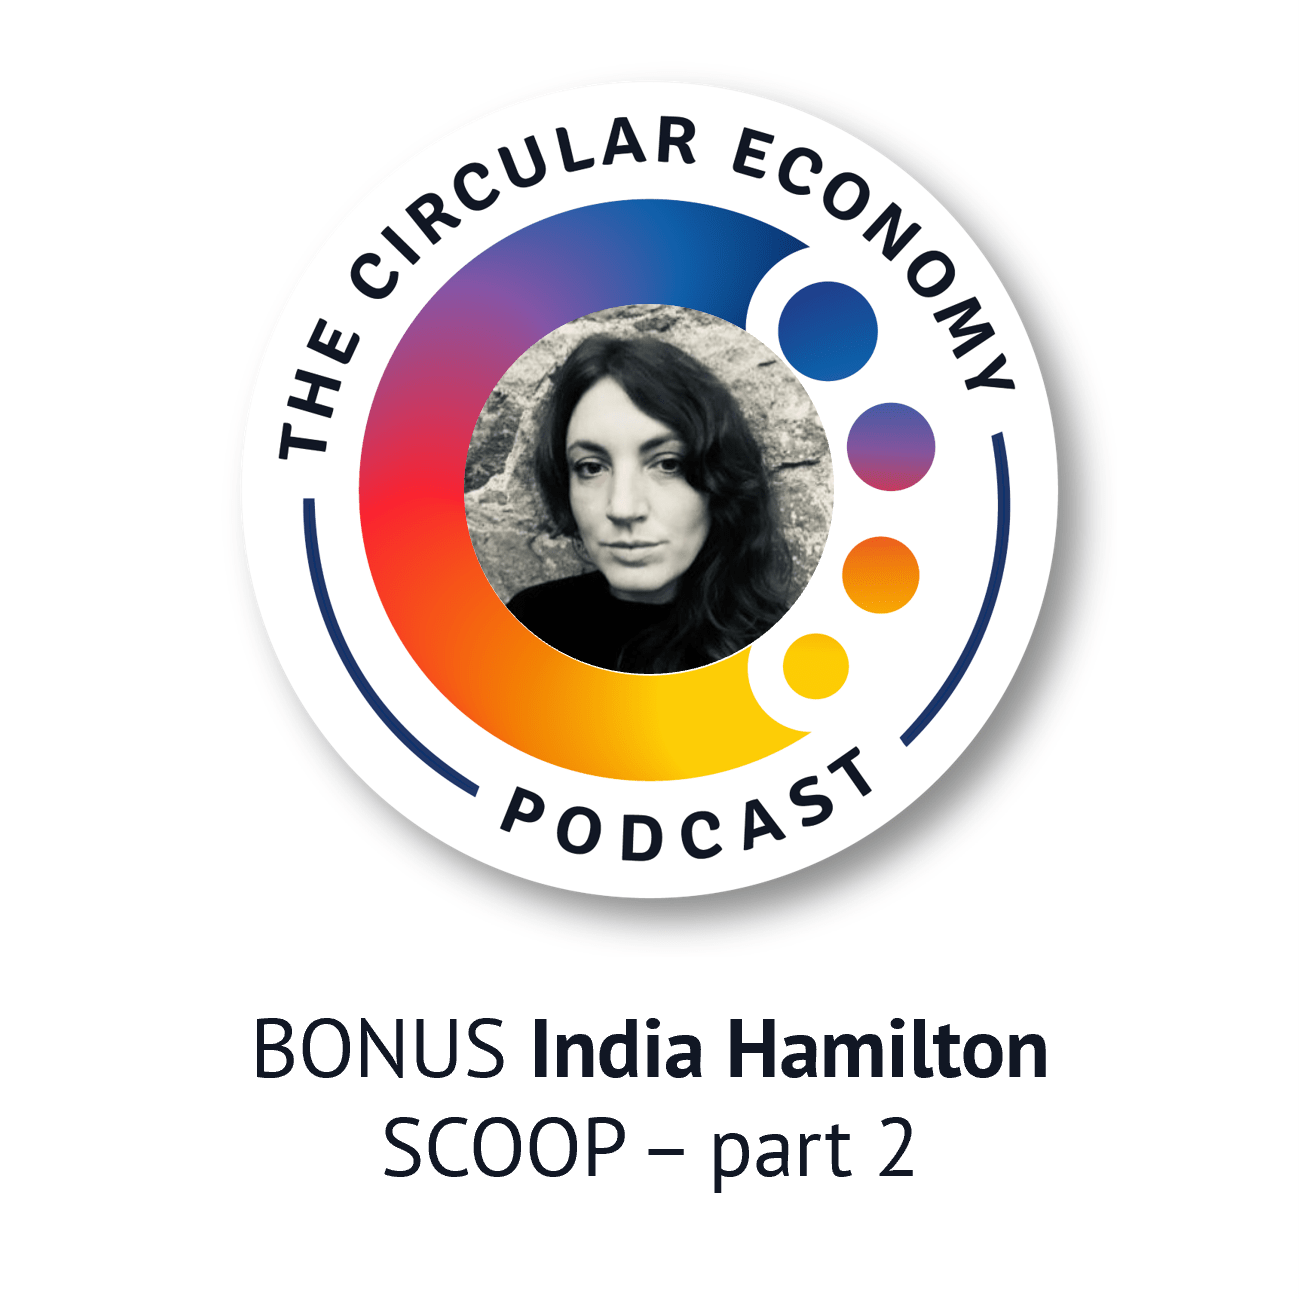 BONUS India Hamilton – SCOOP – part 2